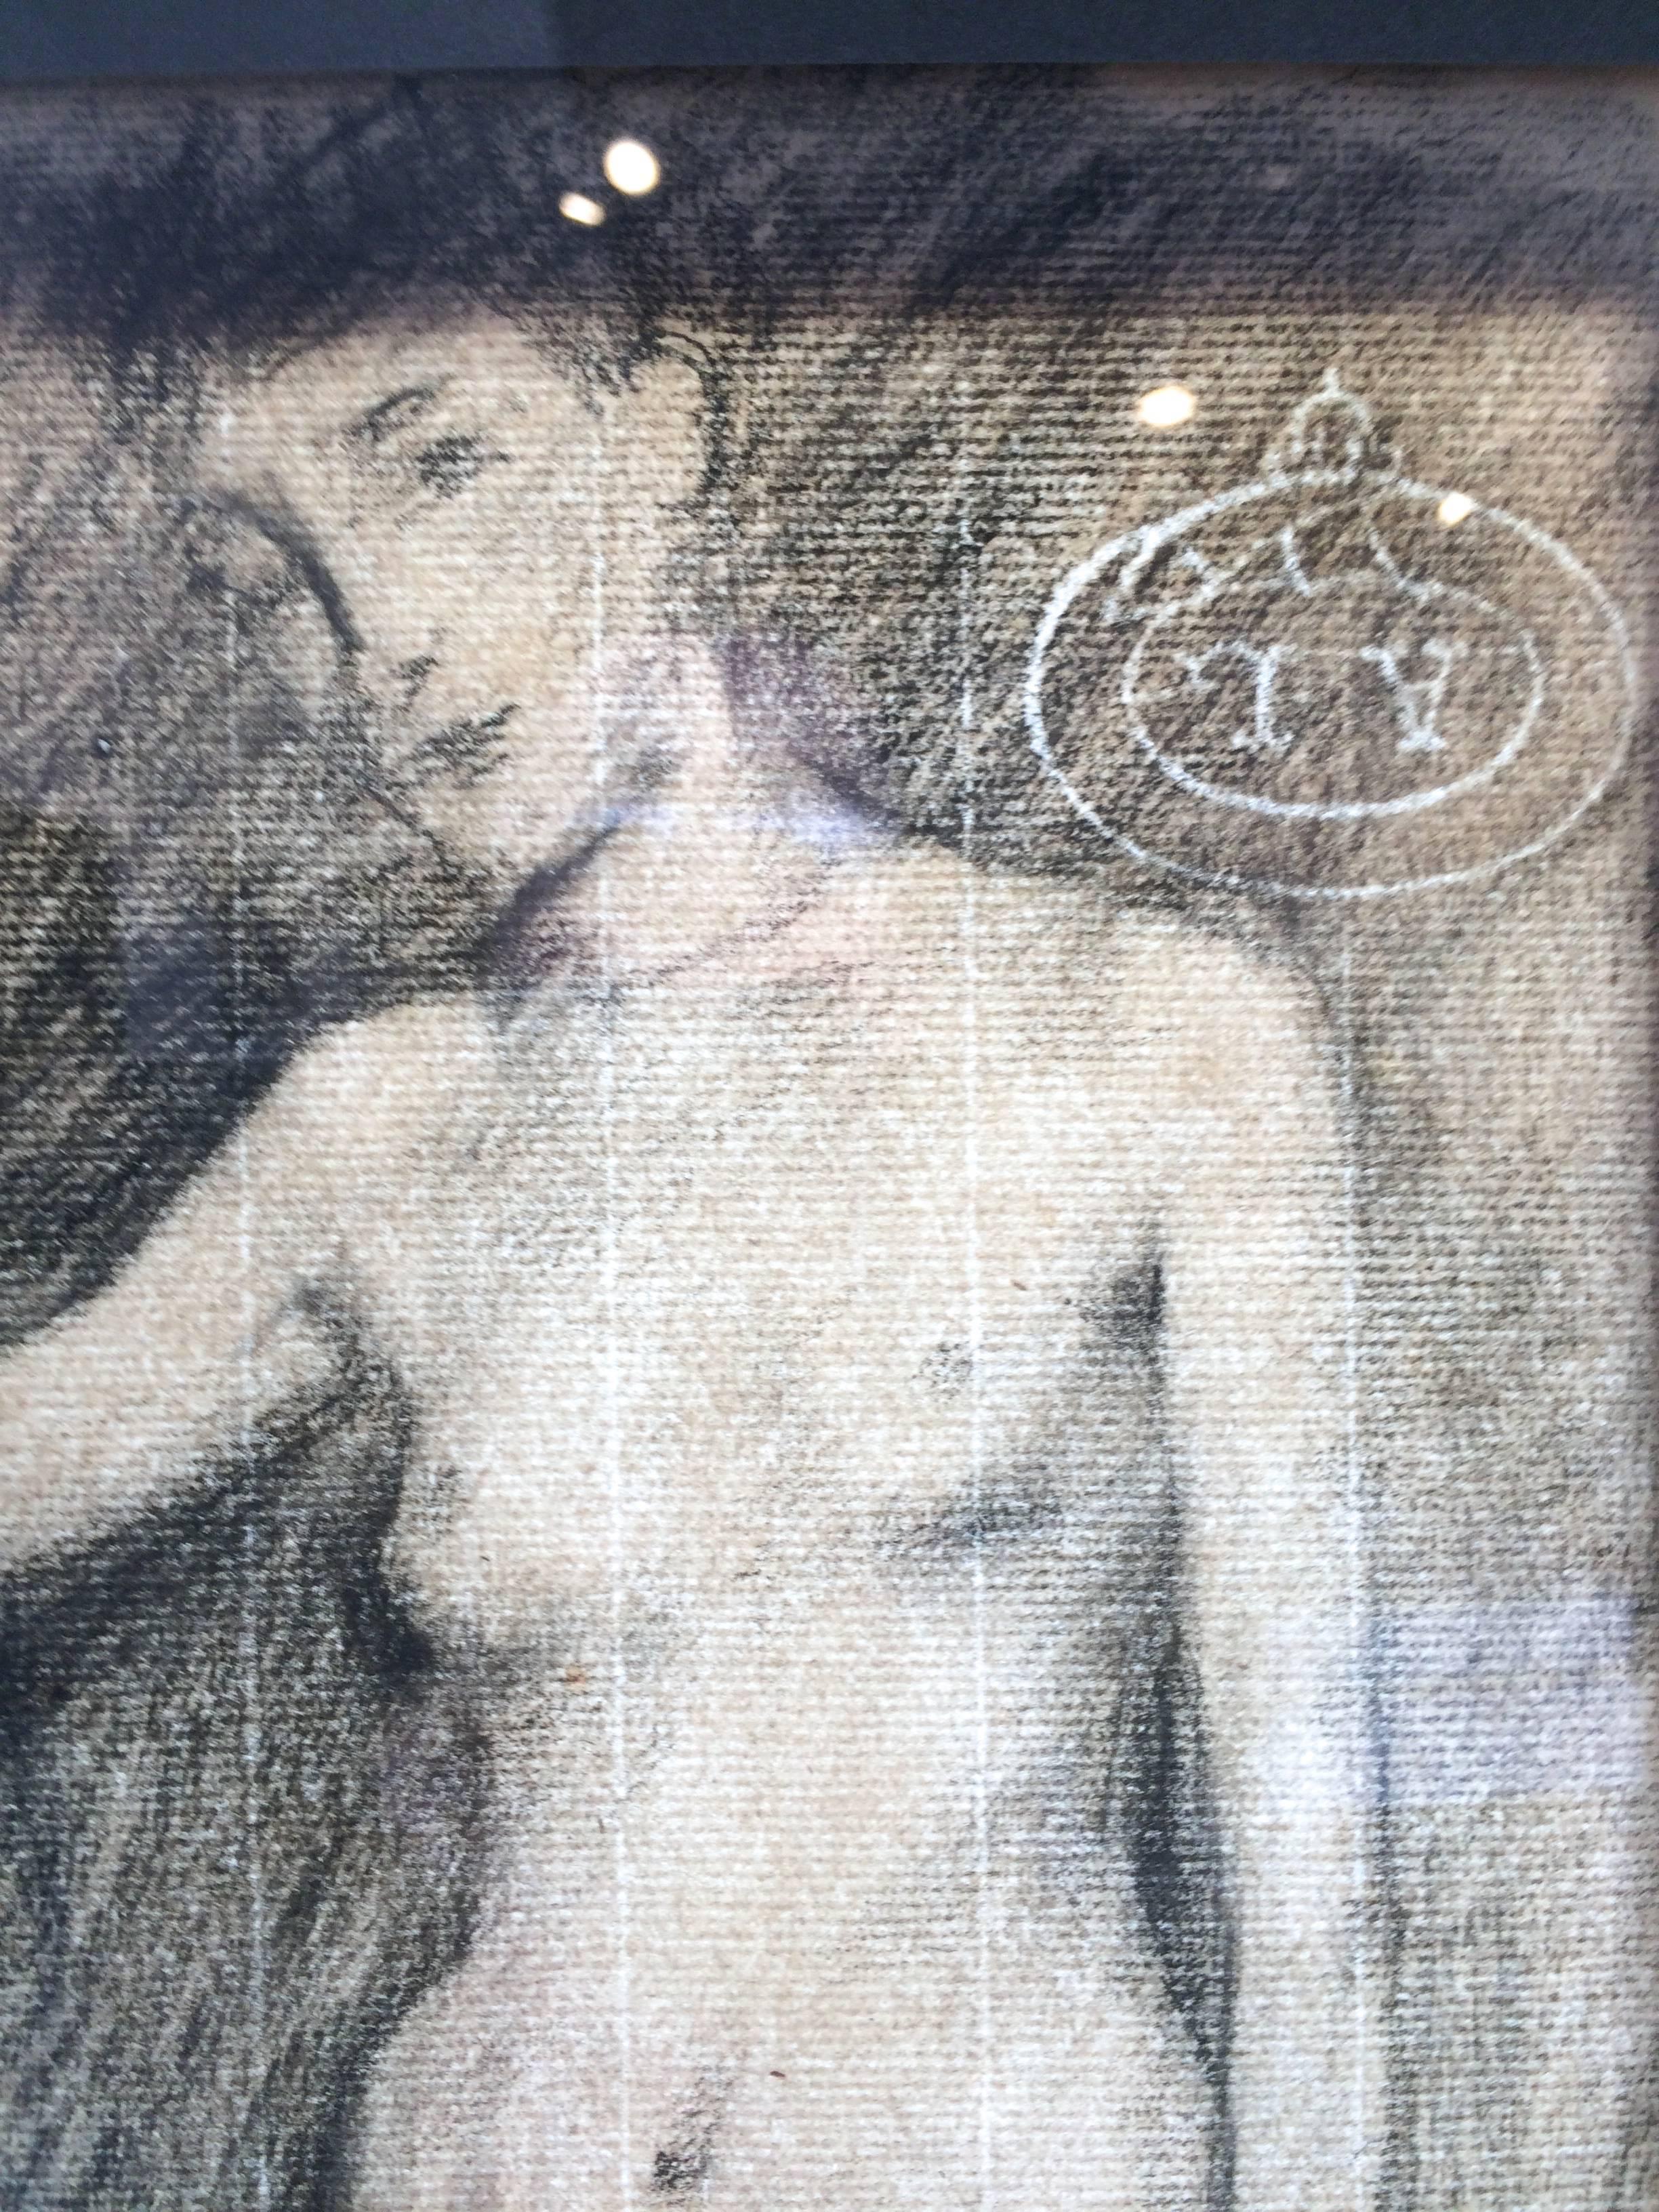  Dessin d'étude académique du début du 20e siècle d'une figure féminine nue, également un dessin de nu au verso, papier filigrané, non signé.
Nu dessiné au crayon 17 